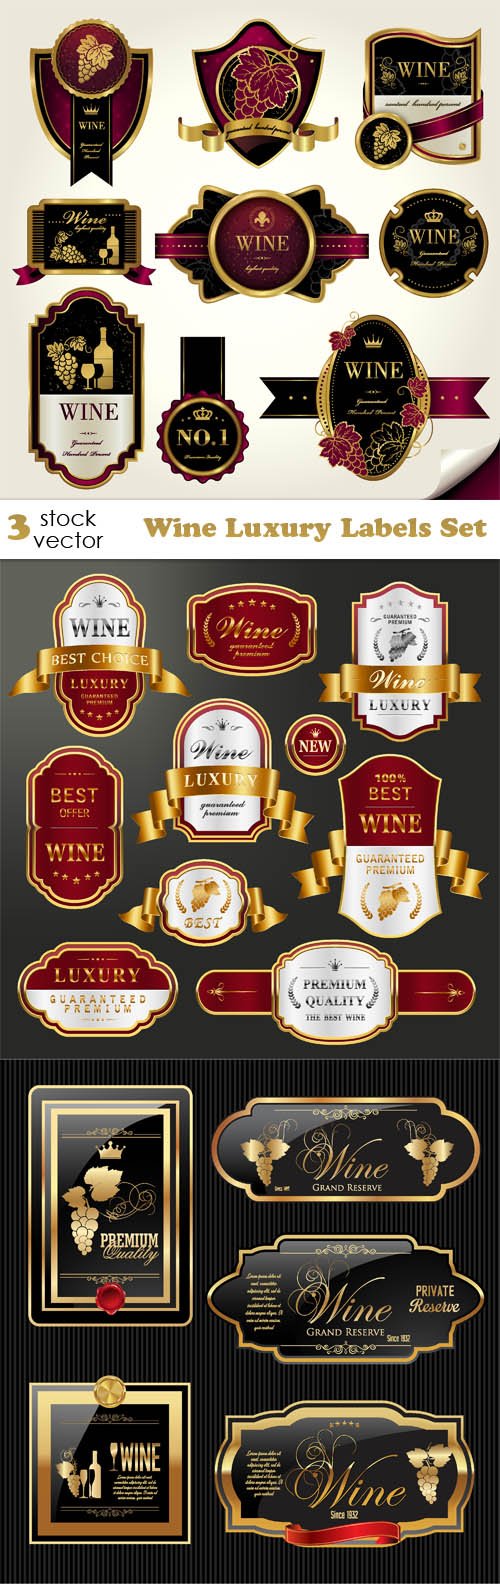 Vectors - Wine Luxury Labels Set